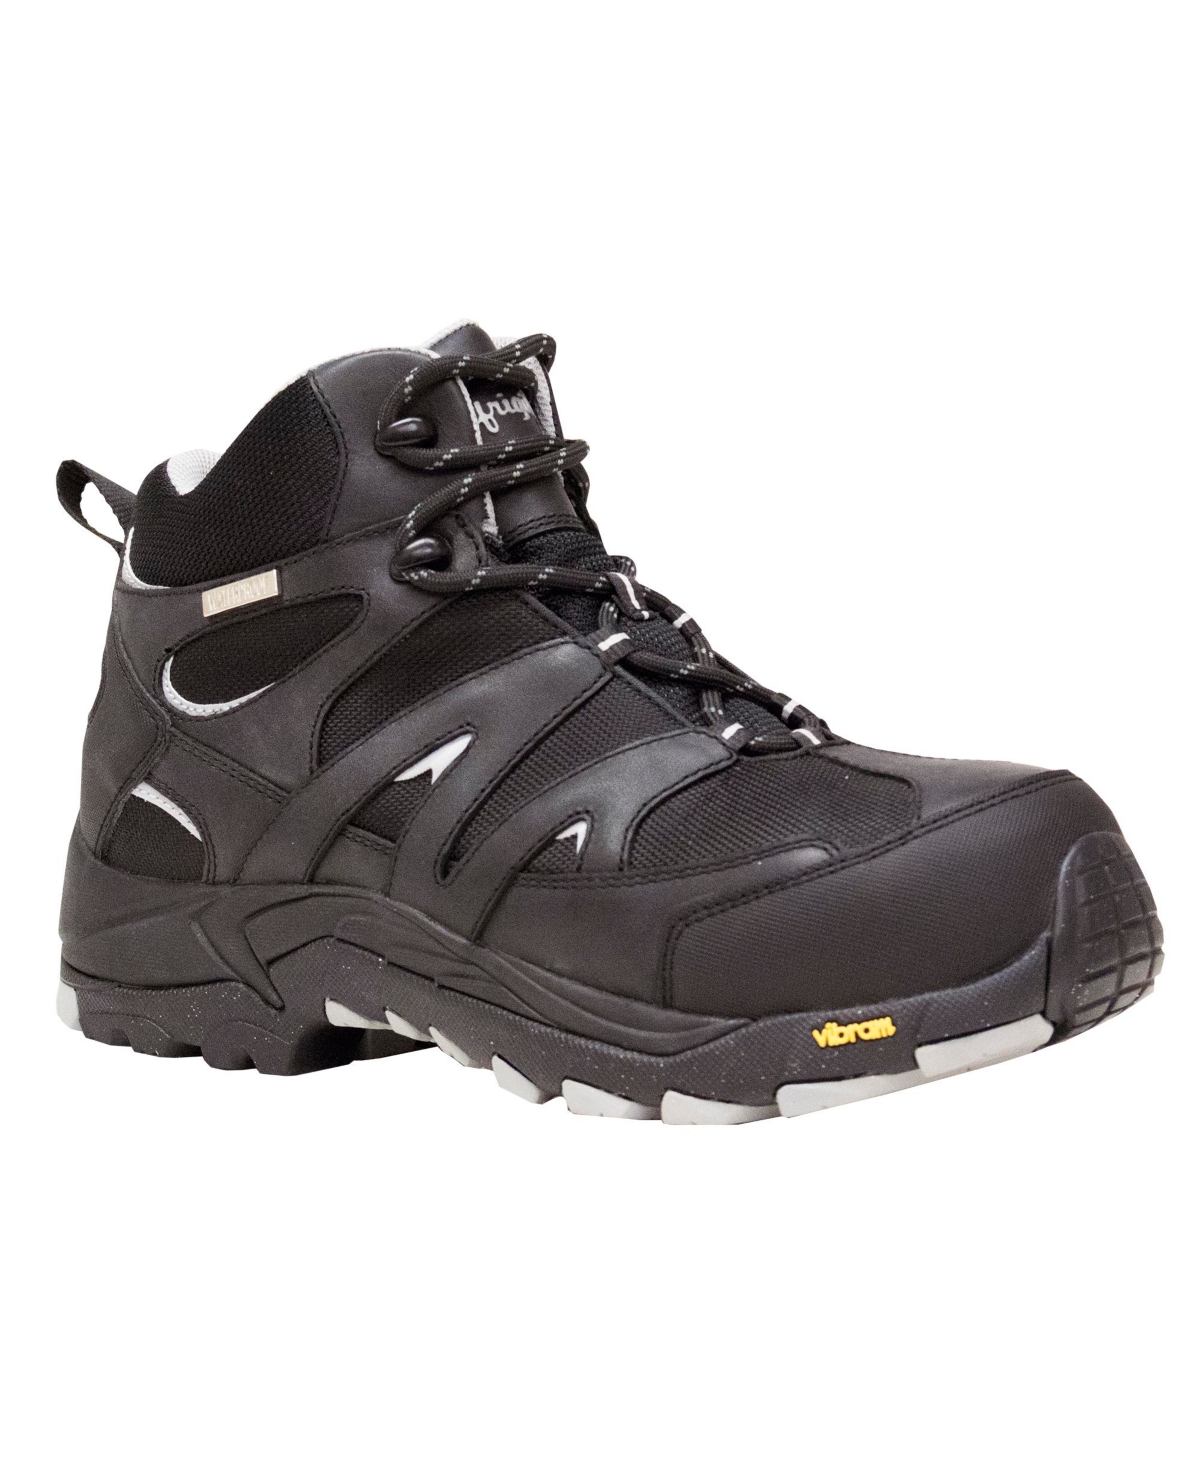 Men's Crossover Hiker Waterproof Lightweight Work Boots - Black